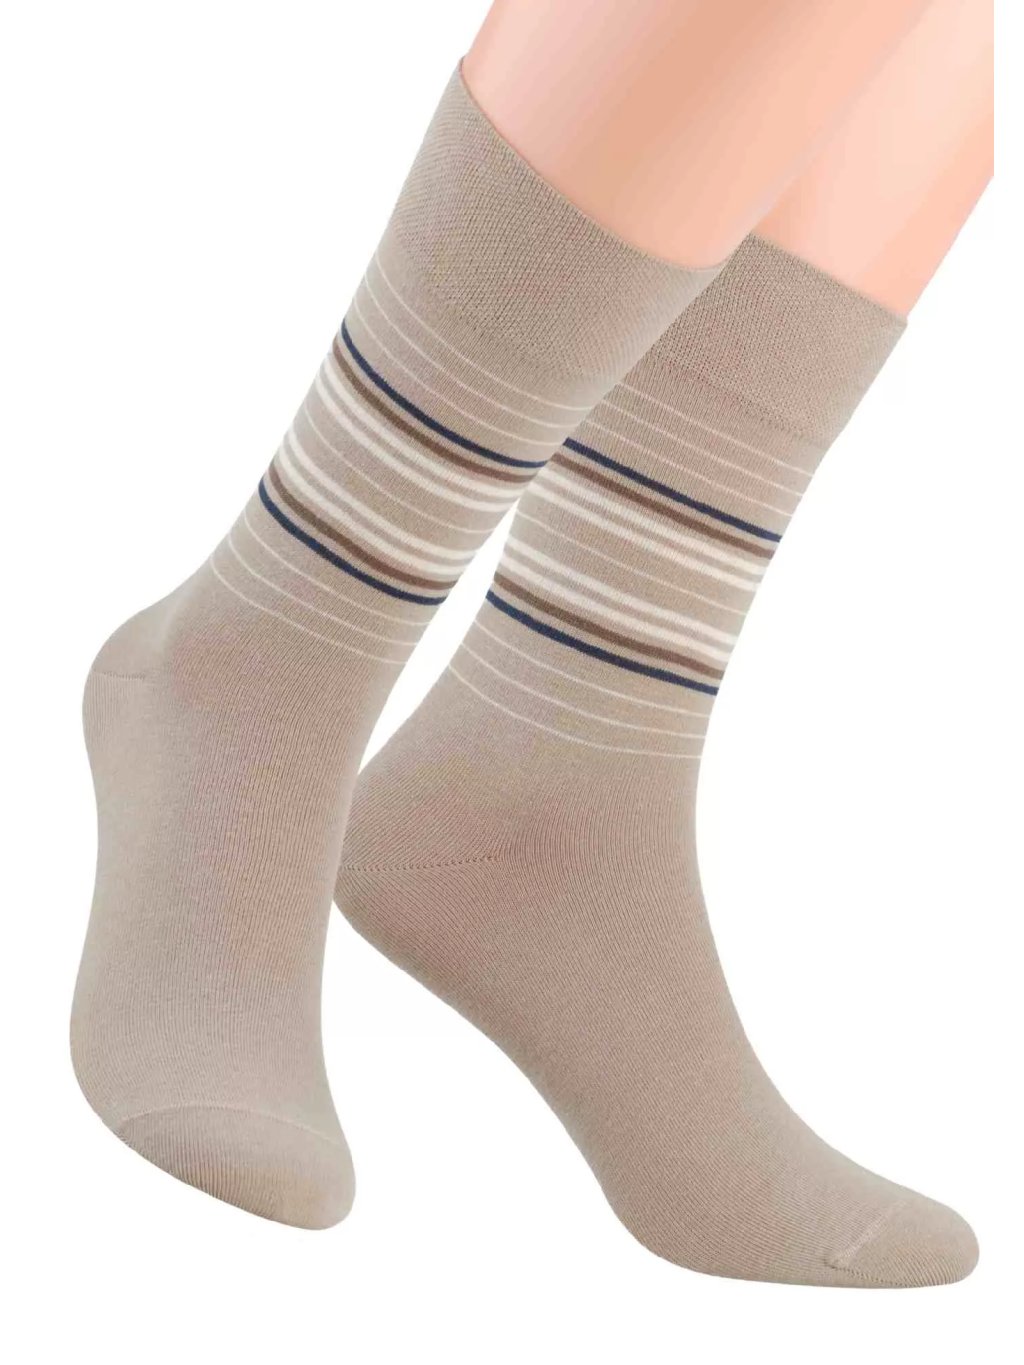 Pánské oblek ponožky s barevných pruhů STEVEN 056/6 Barva/Velikost: béžová / 45/47